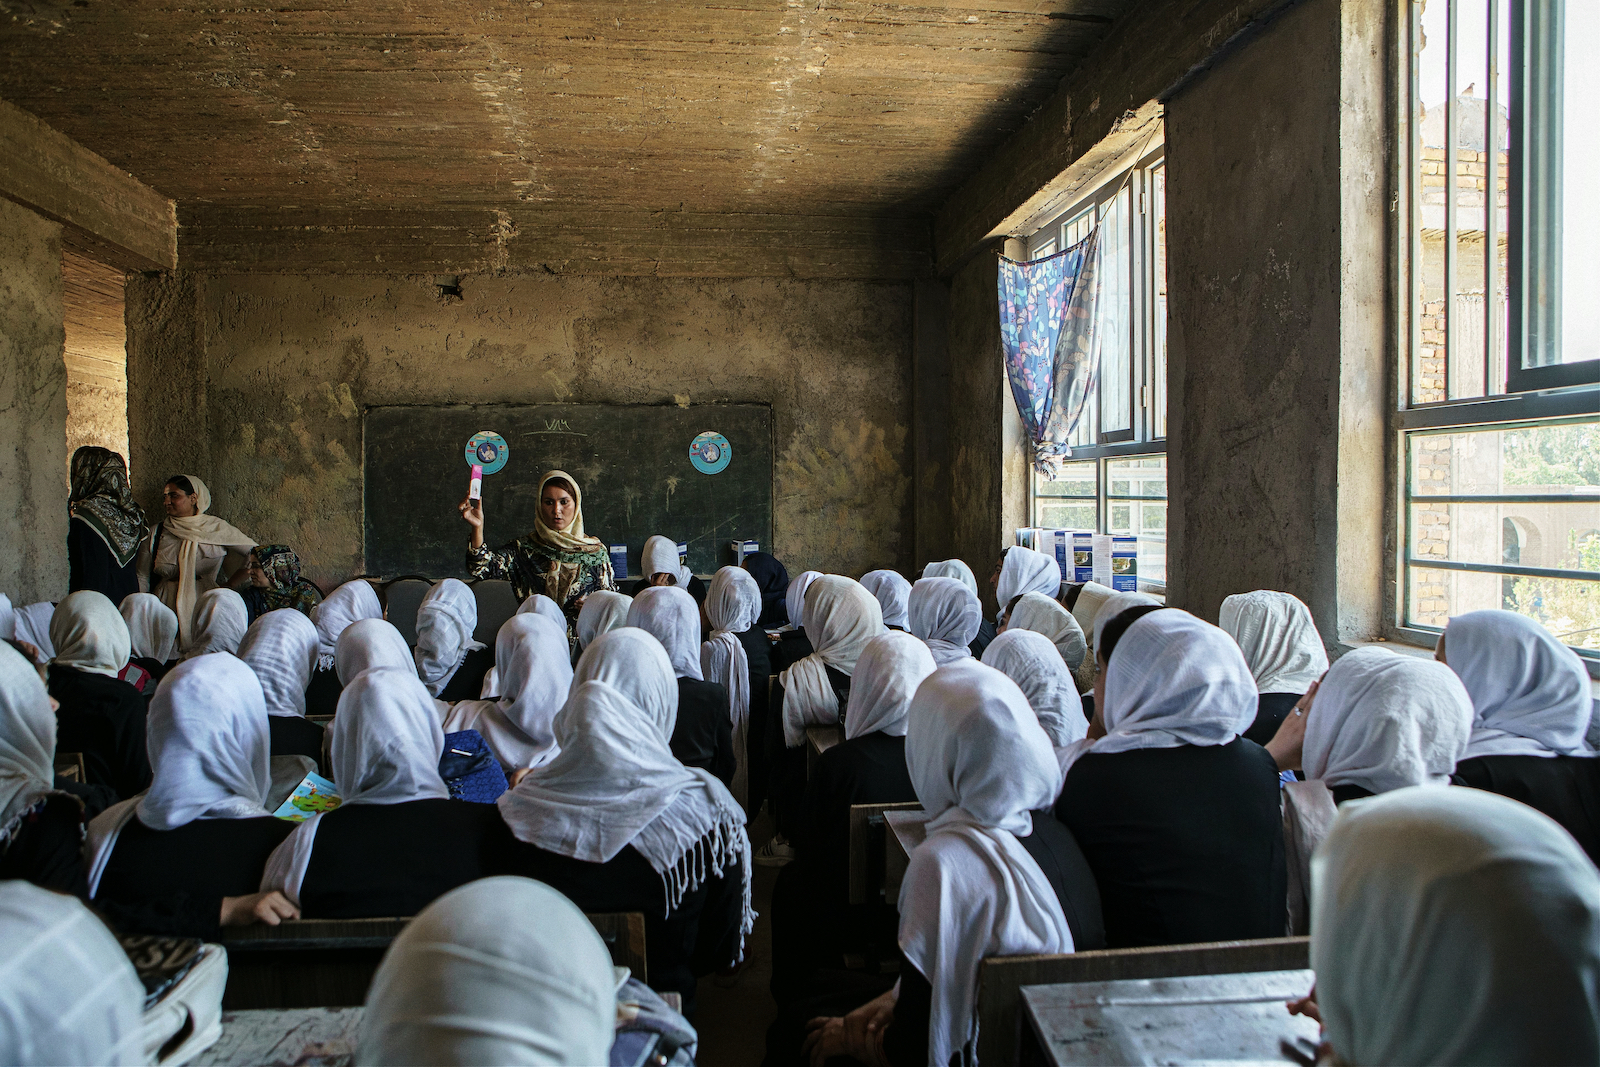 Afghan girls attending school in Herat, Afghanistan in 2019